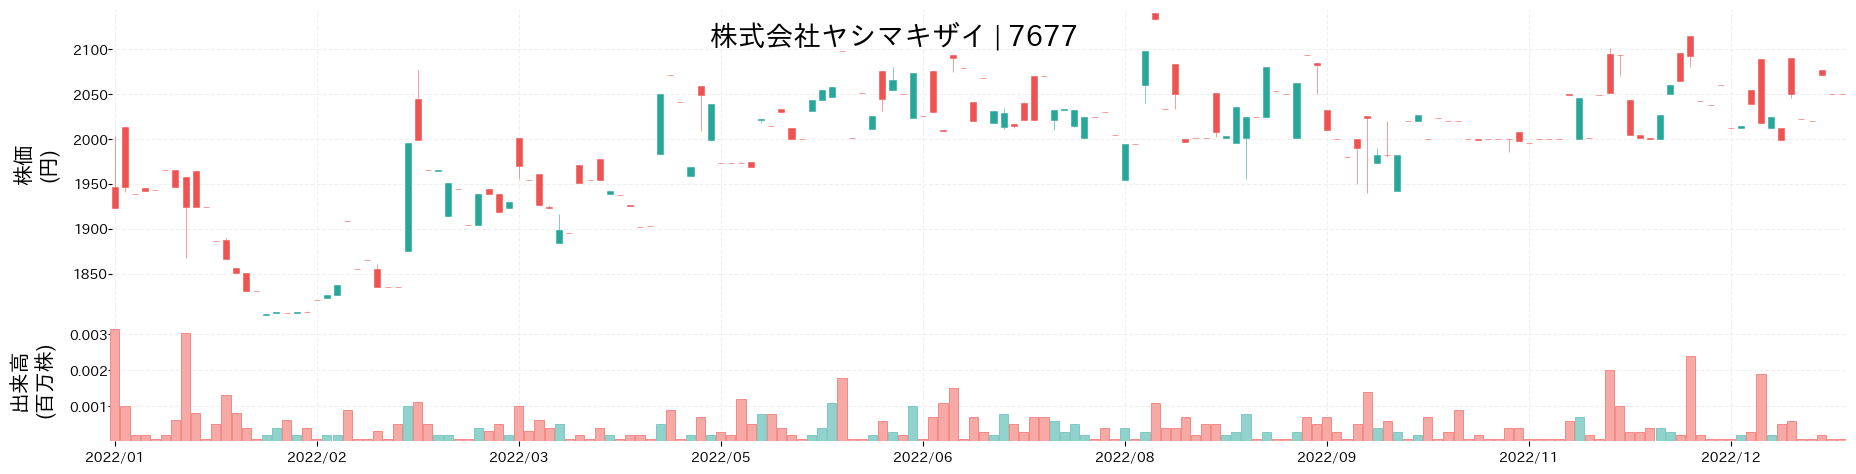 ヤシマキザイの株価推移(2022)